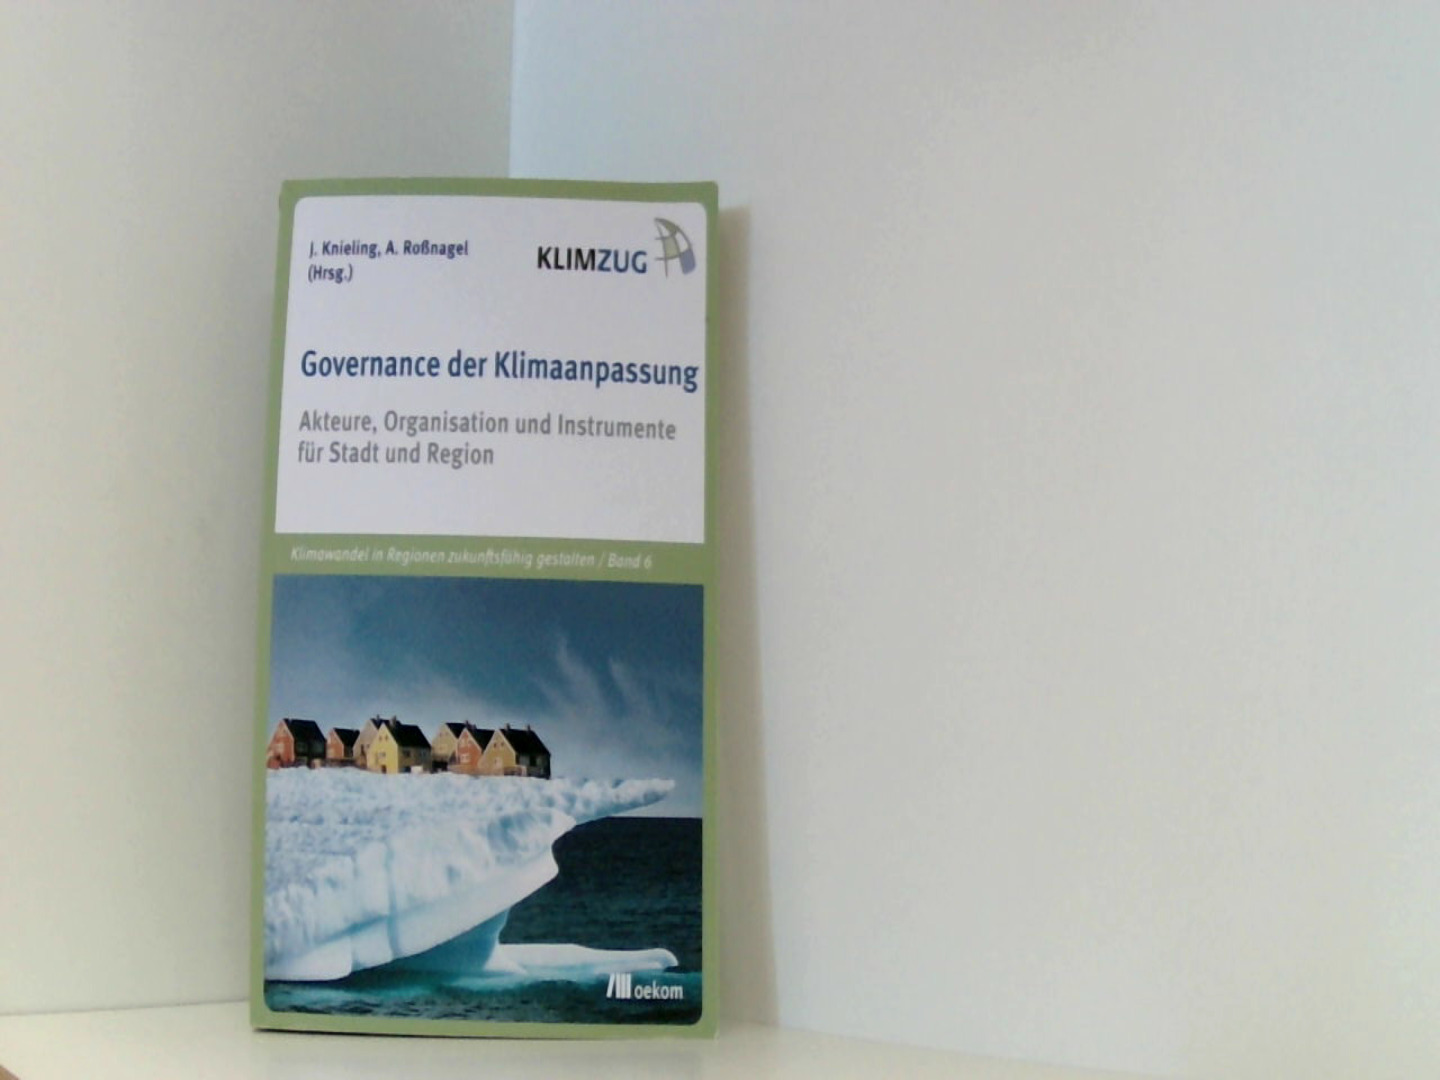 Governance der Klimaanpassung: Akteure, Organisation und Instrumente für Stadt und Region (KLIMZUG) - Knieling, Jörg und Alexander Roßnagel